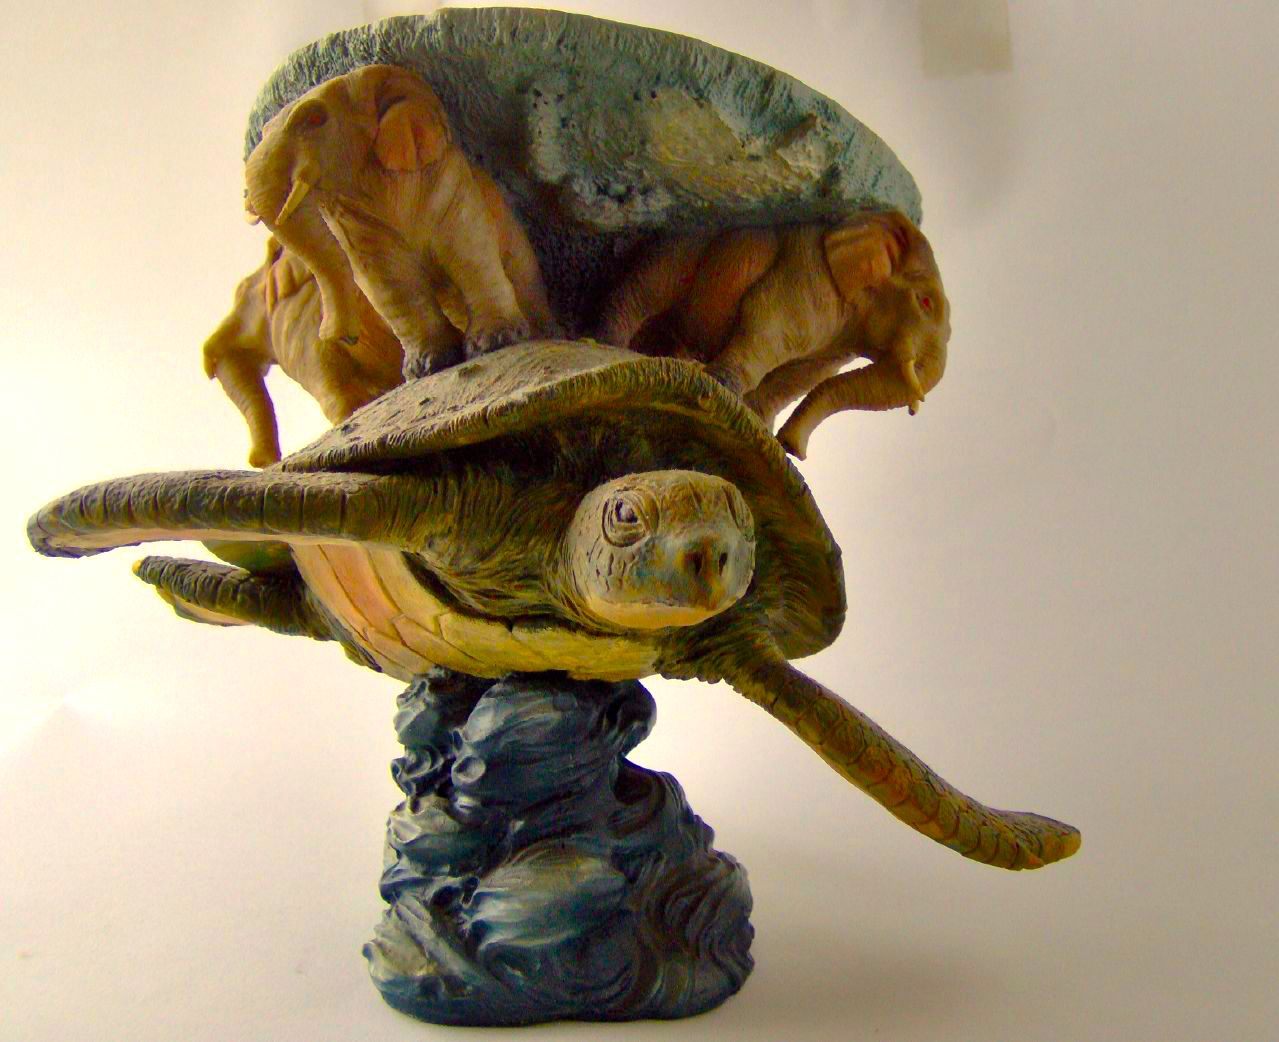 Черепаха Матурин. Терри Пратчетт плоский мир черепаха. Земля на черепахе. 3 слона на черепахе